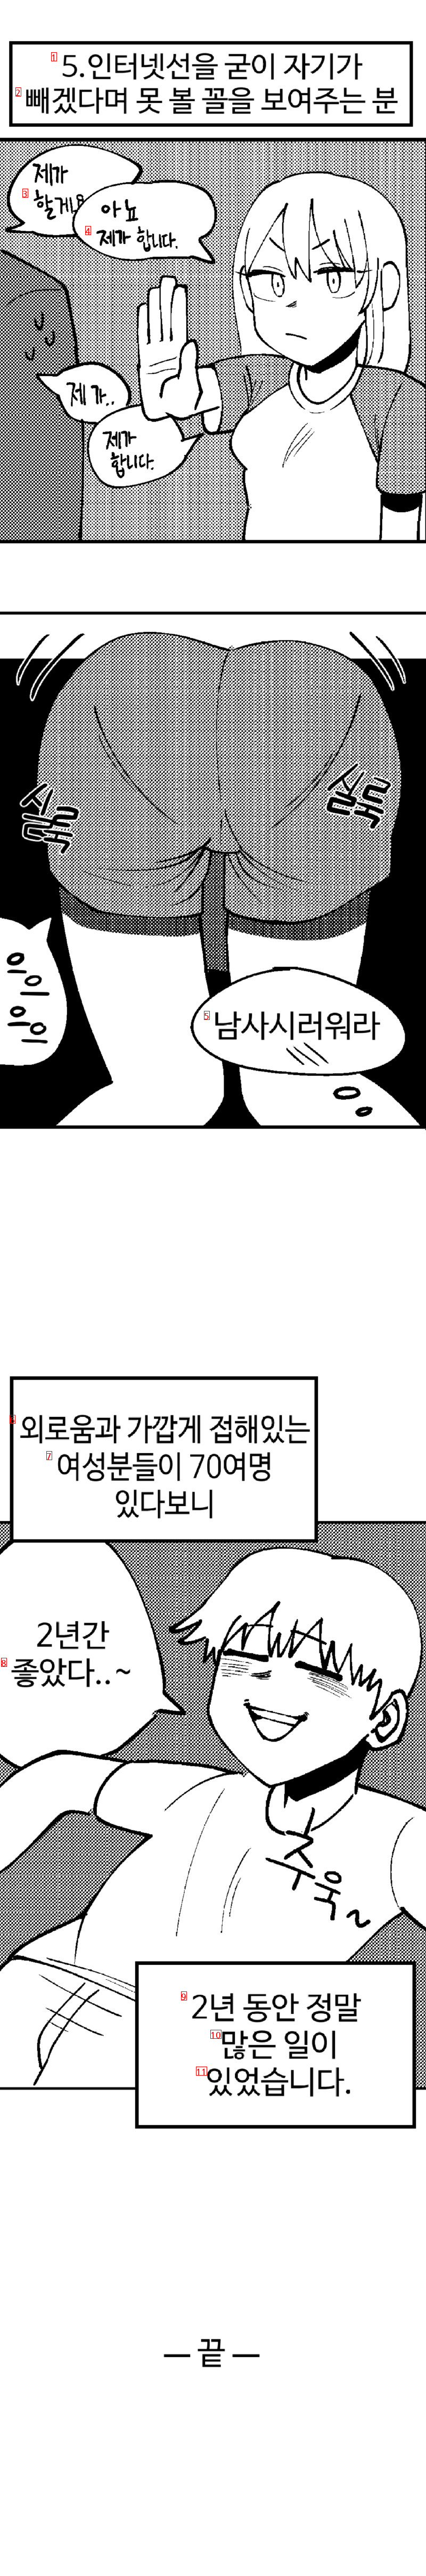 19) 노량진 고시원에서 총무했던 썰. 만화